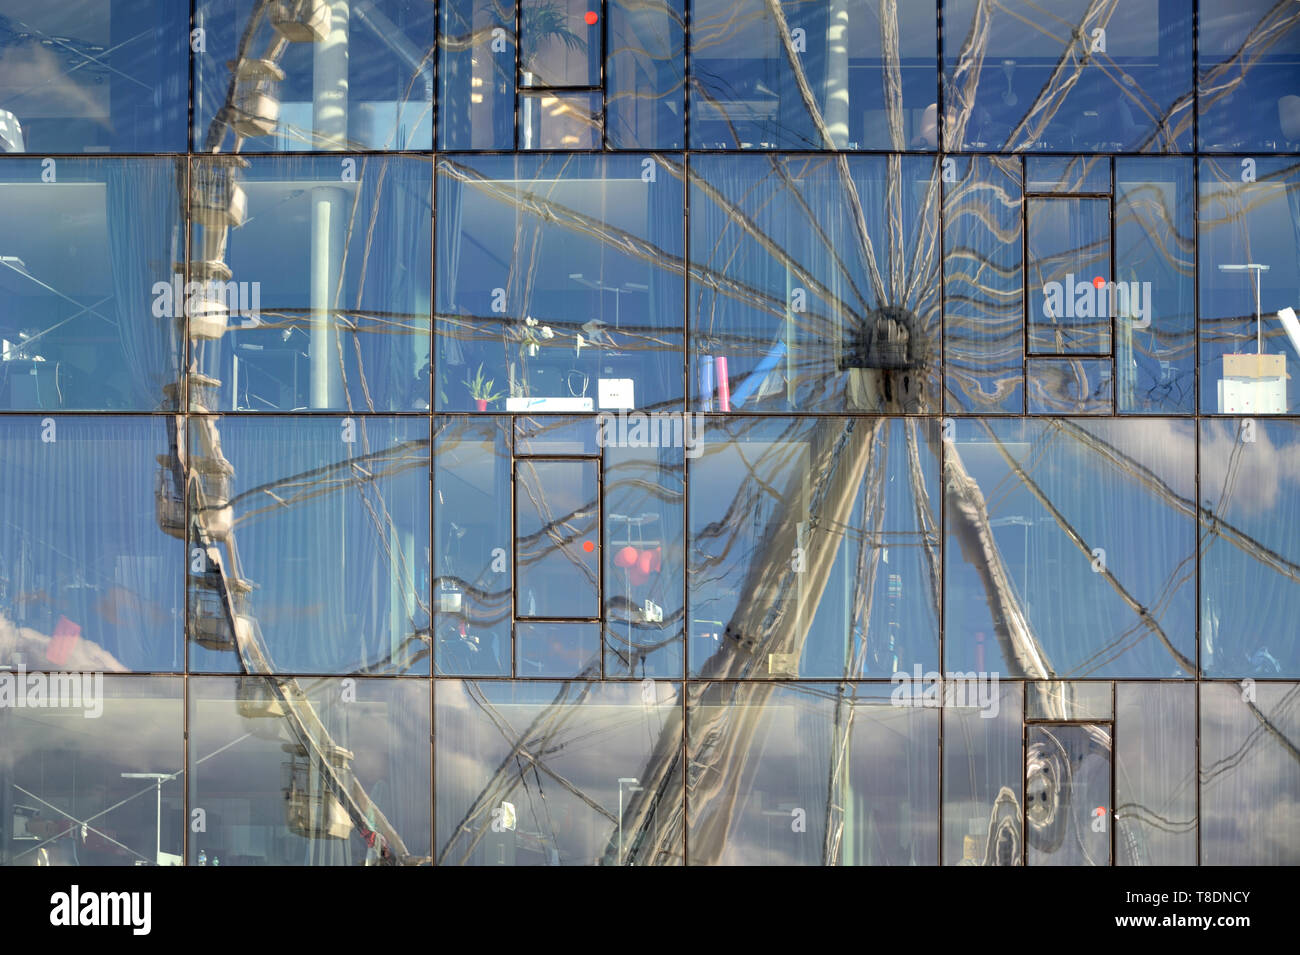 Reflet déformé de la grande roue et de rayons dans le miroir de verre Musée Musée des civilisations méditerranéennes et européennes Marseille France Banque D'Images